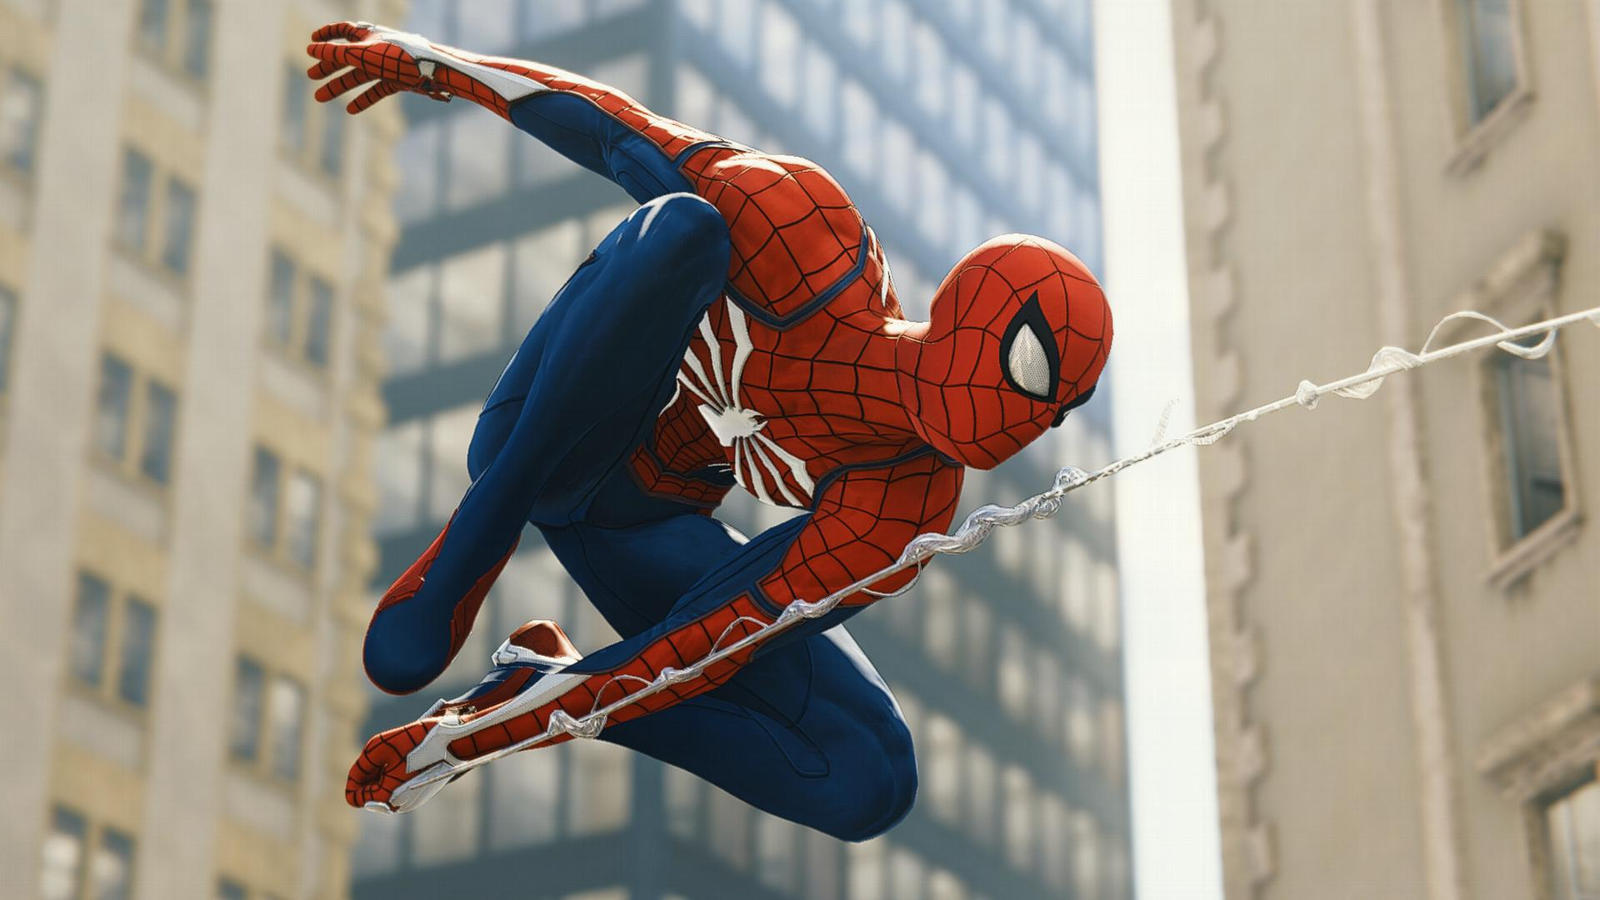 Spider Man In Action Spider Man Ps4 By Remyras On Deviantart